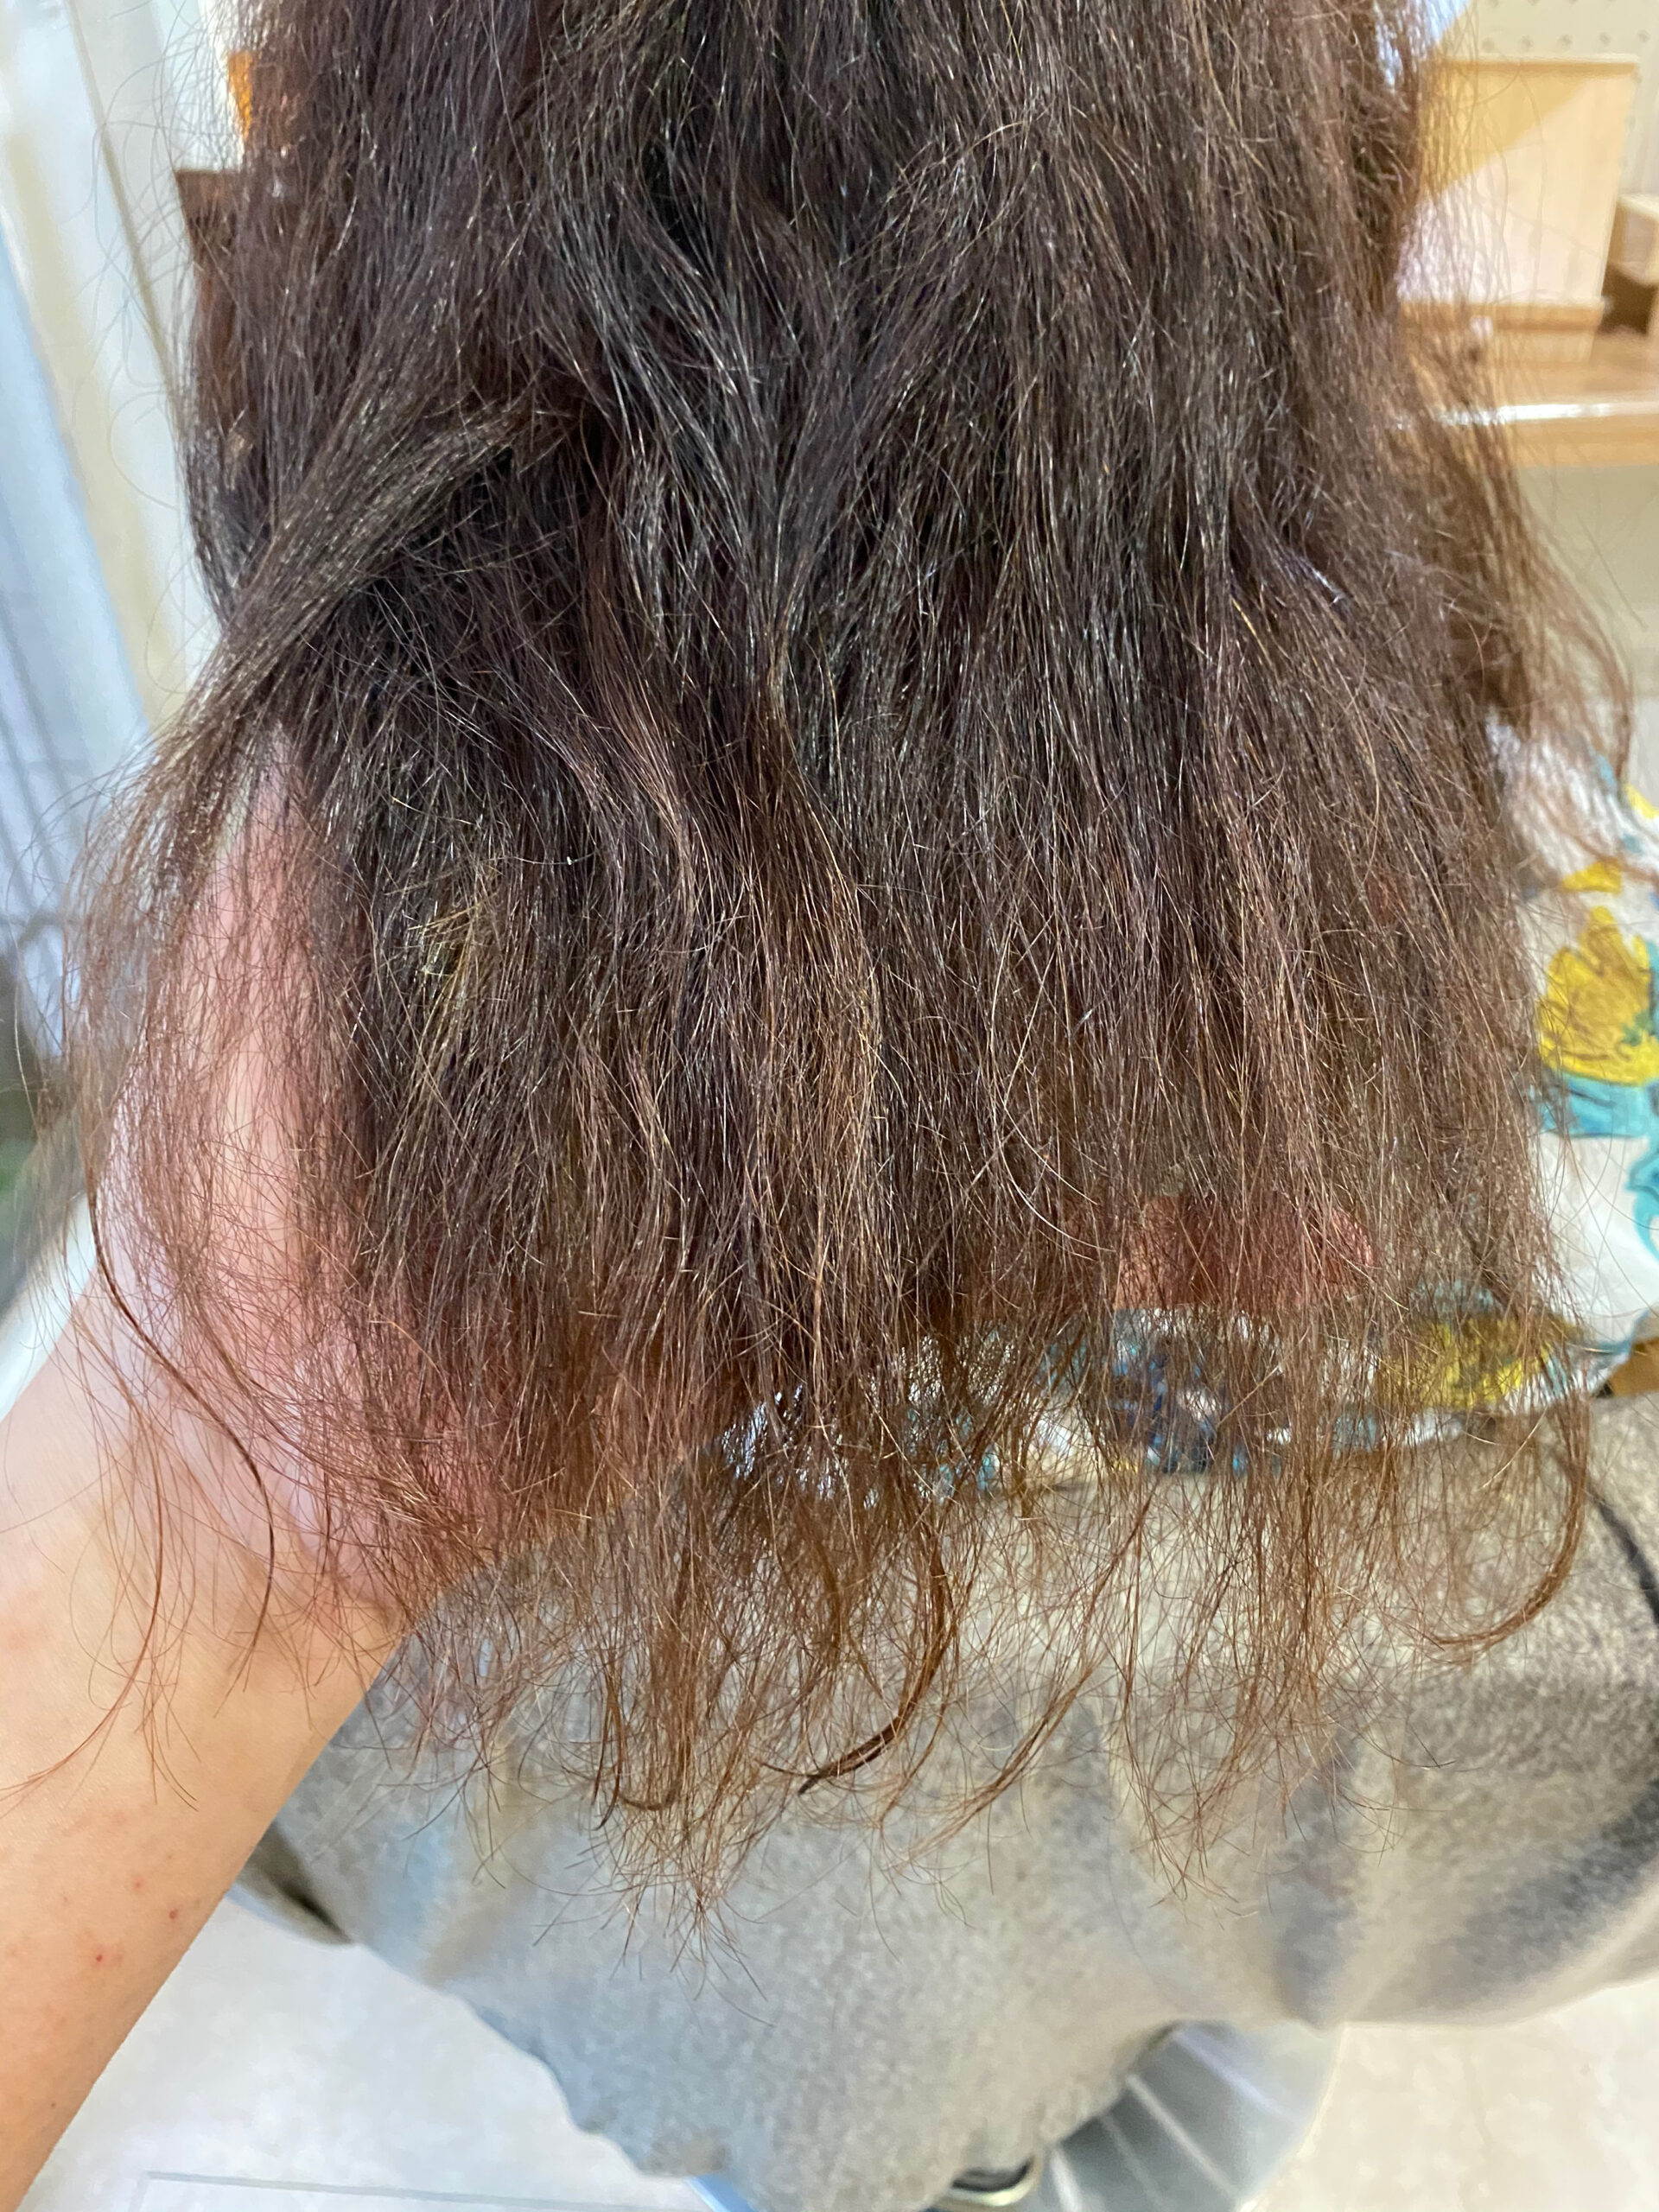 ビビリ矯正とオレオルカラーで艶髪ストレートヘア。原宿・表参道『髪のお悩みを解決するヘアケア美容師の挑戦』